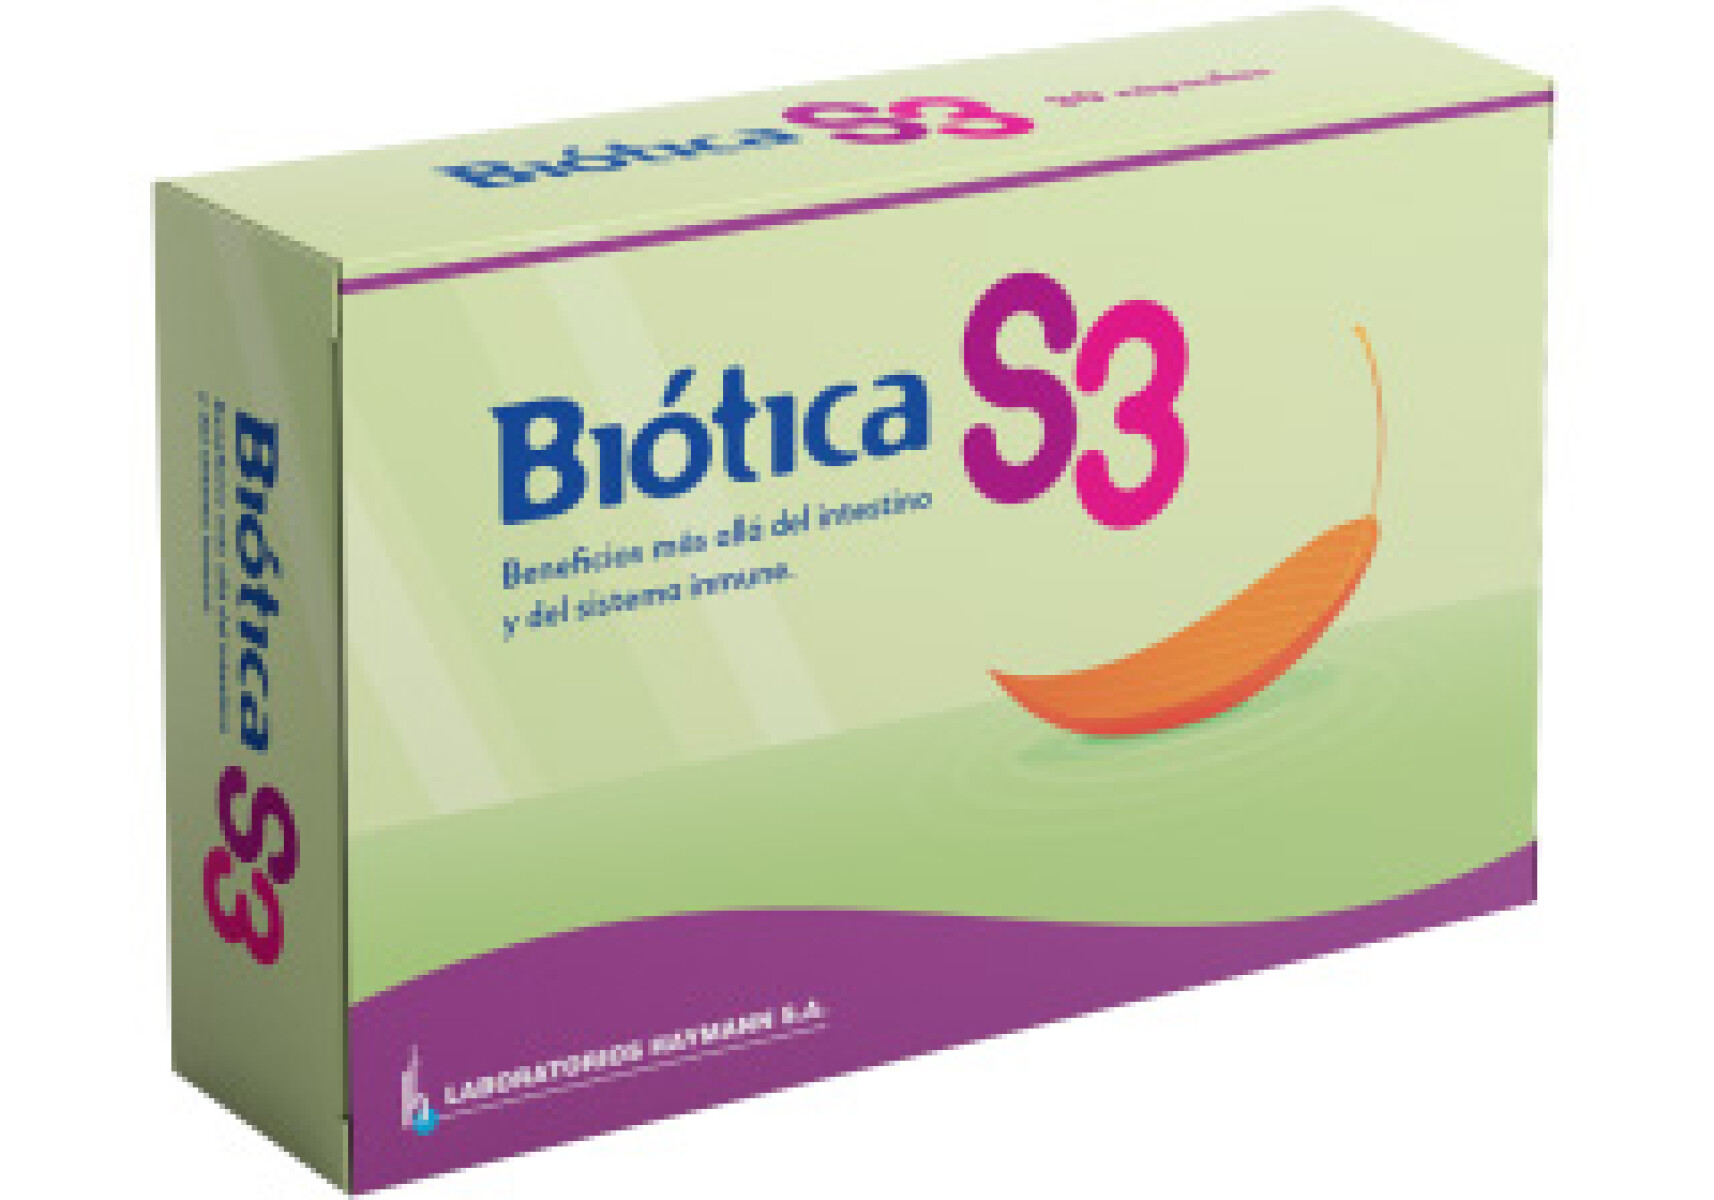 Biotica S3 